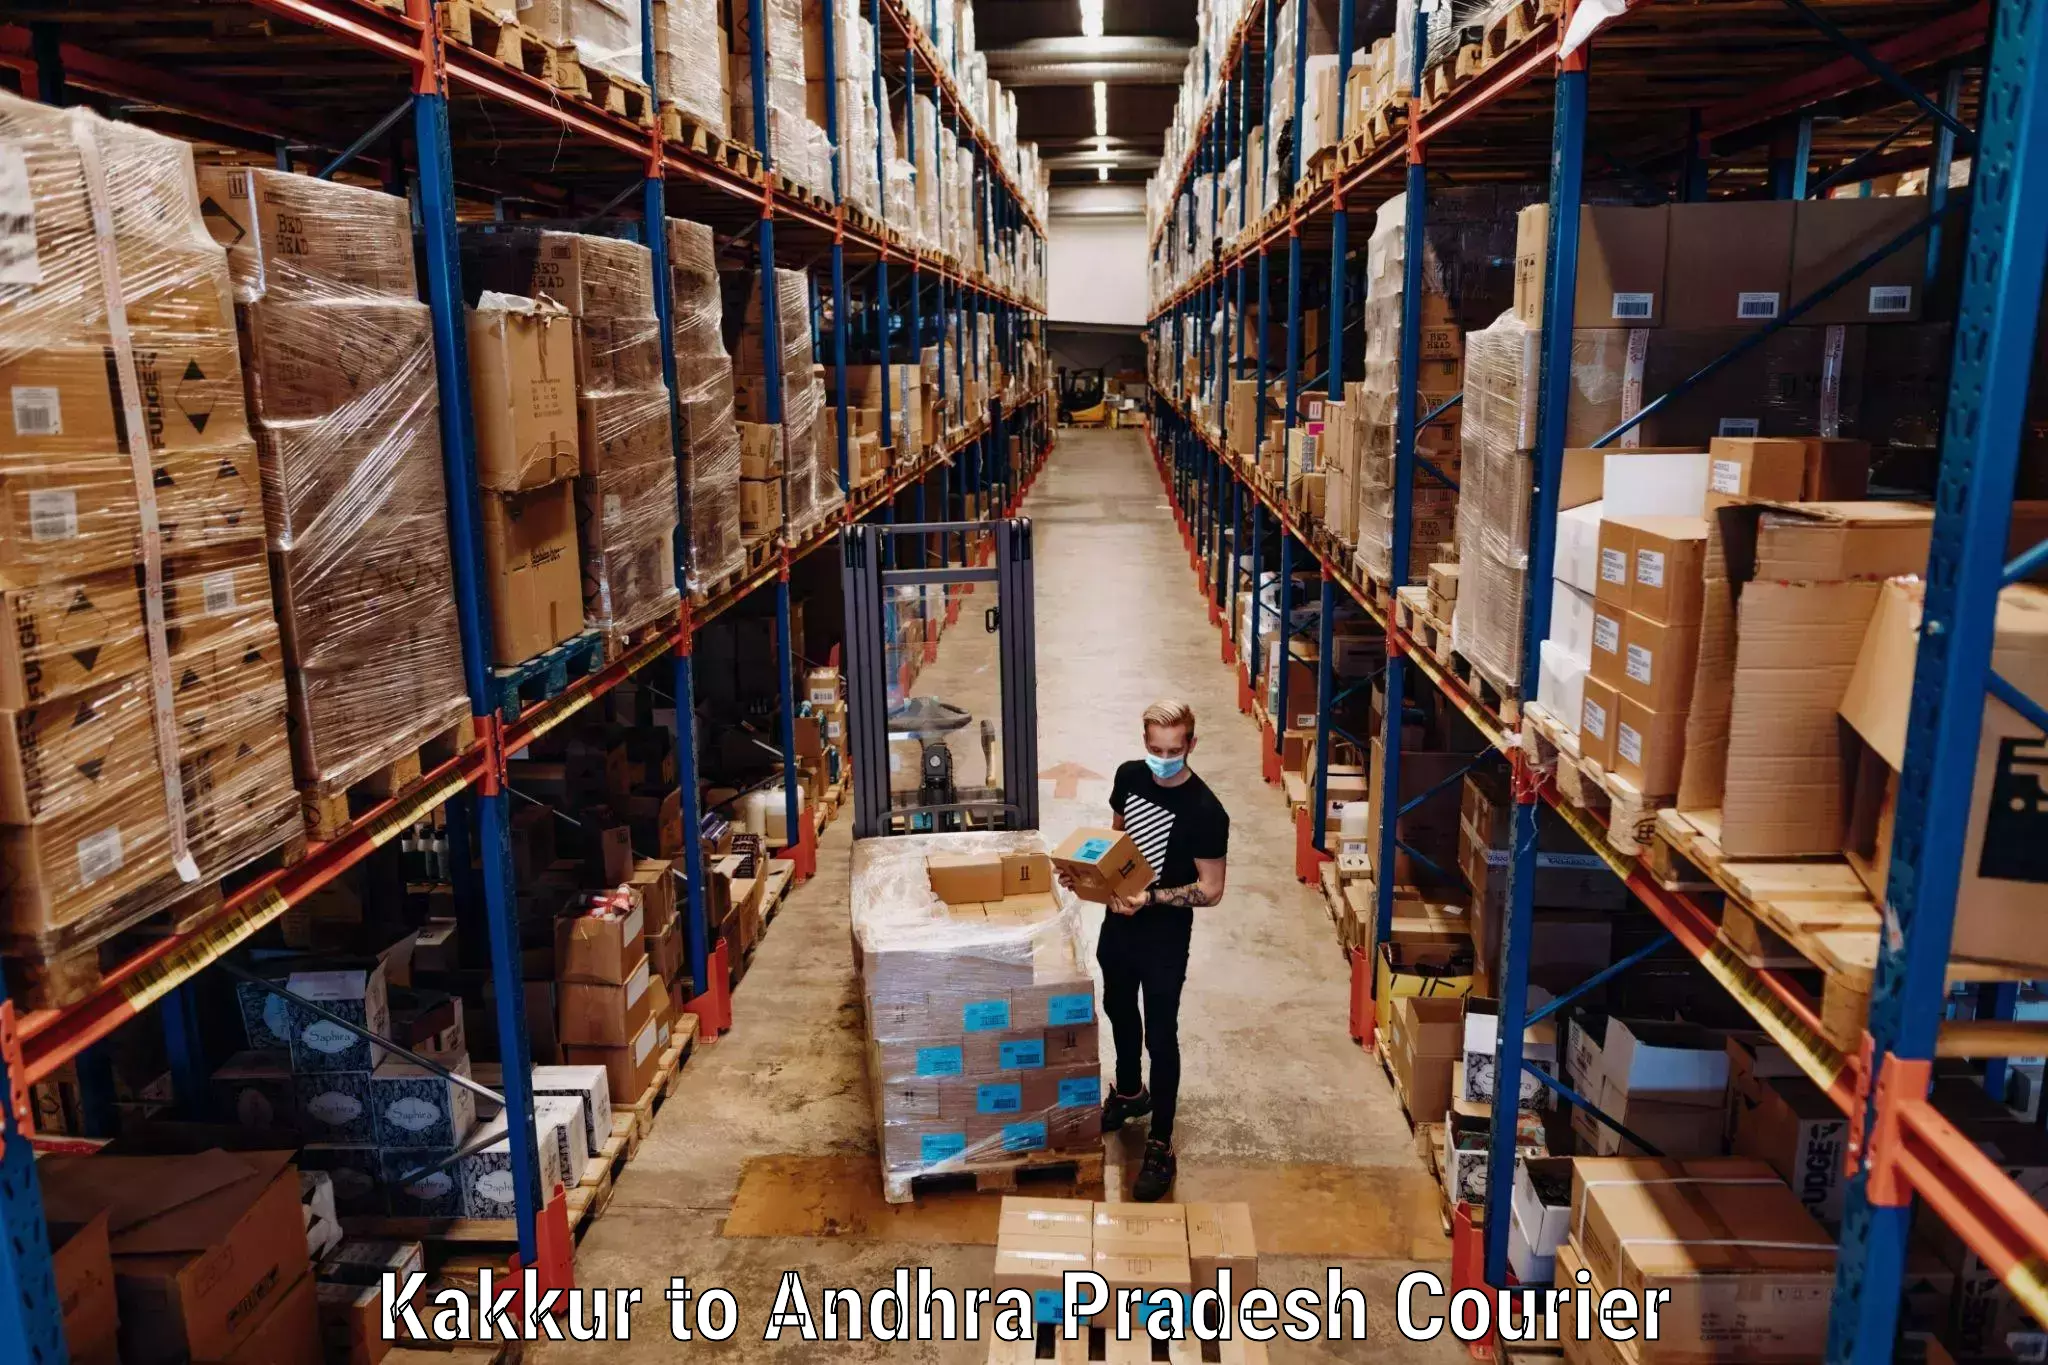 Baggage courier FAQs Kakkur to Kothapalli